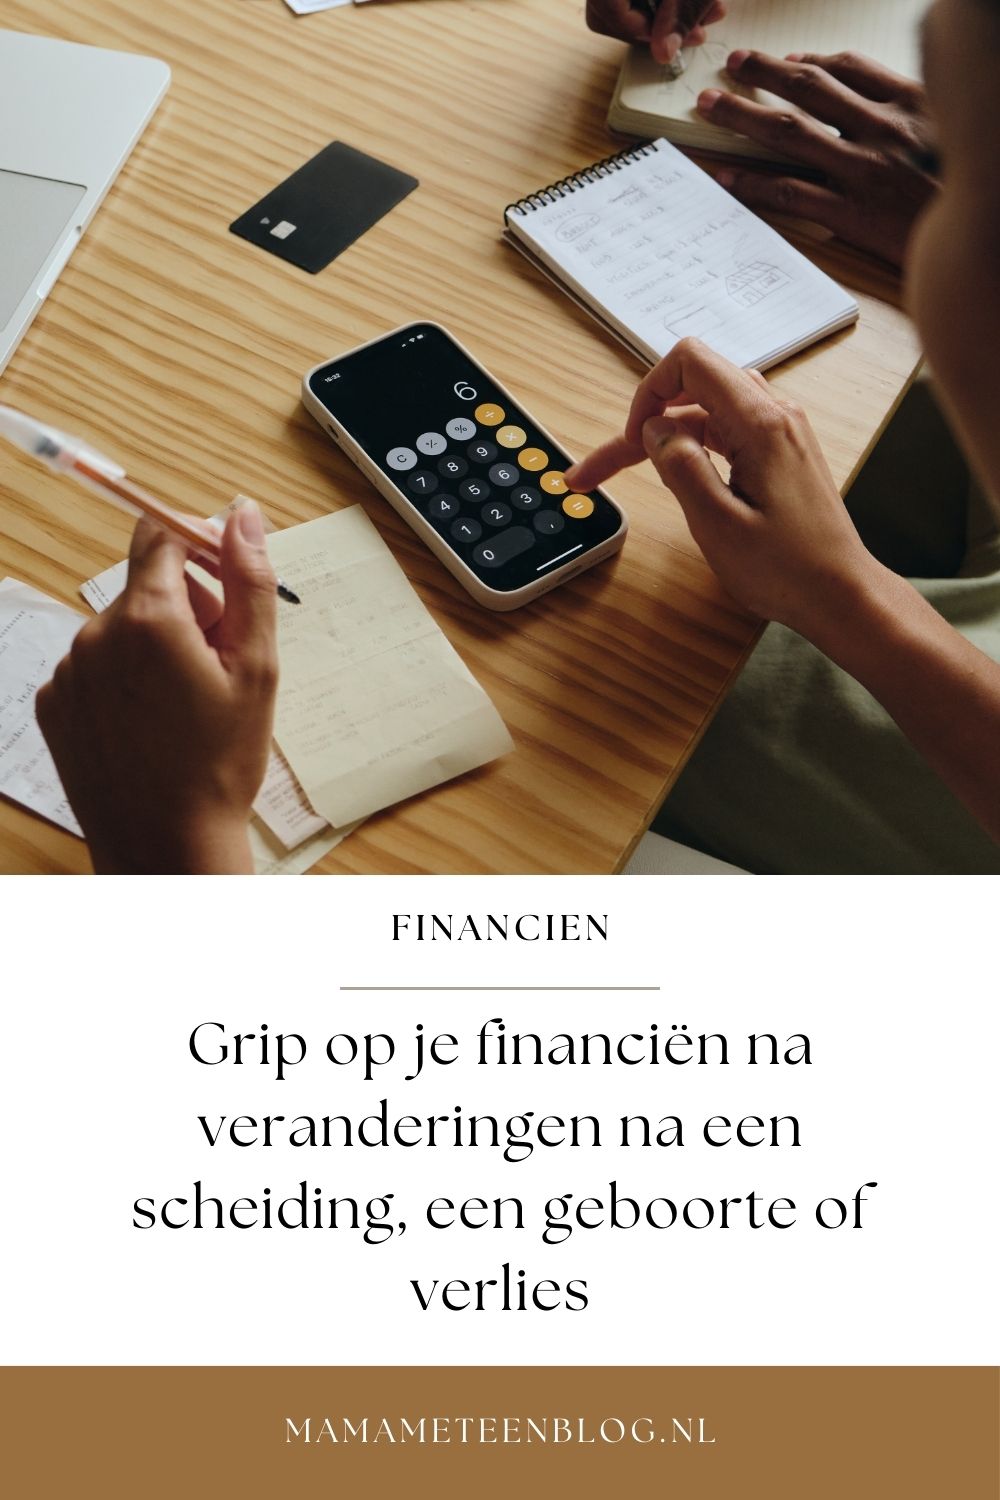 Grip-op-je-financien-na-veranderingen-na-een-scheiding-een-geboorte-of-verlies-mamameteenblog.nl_